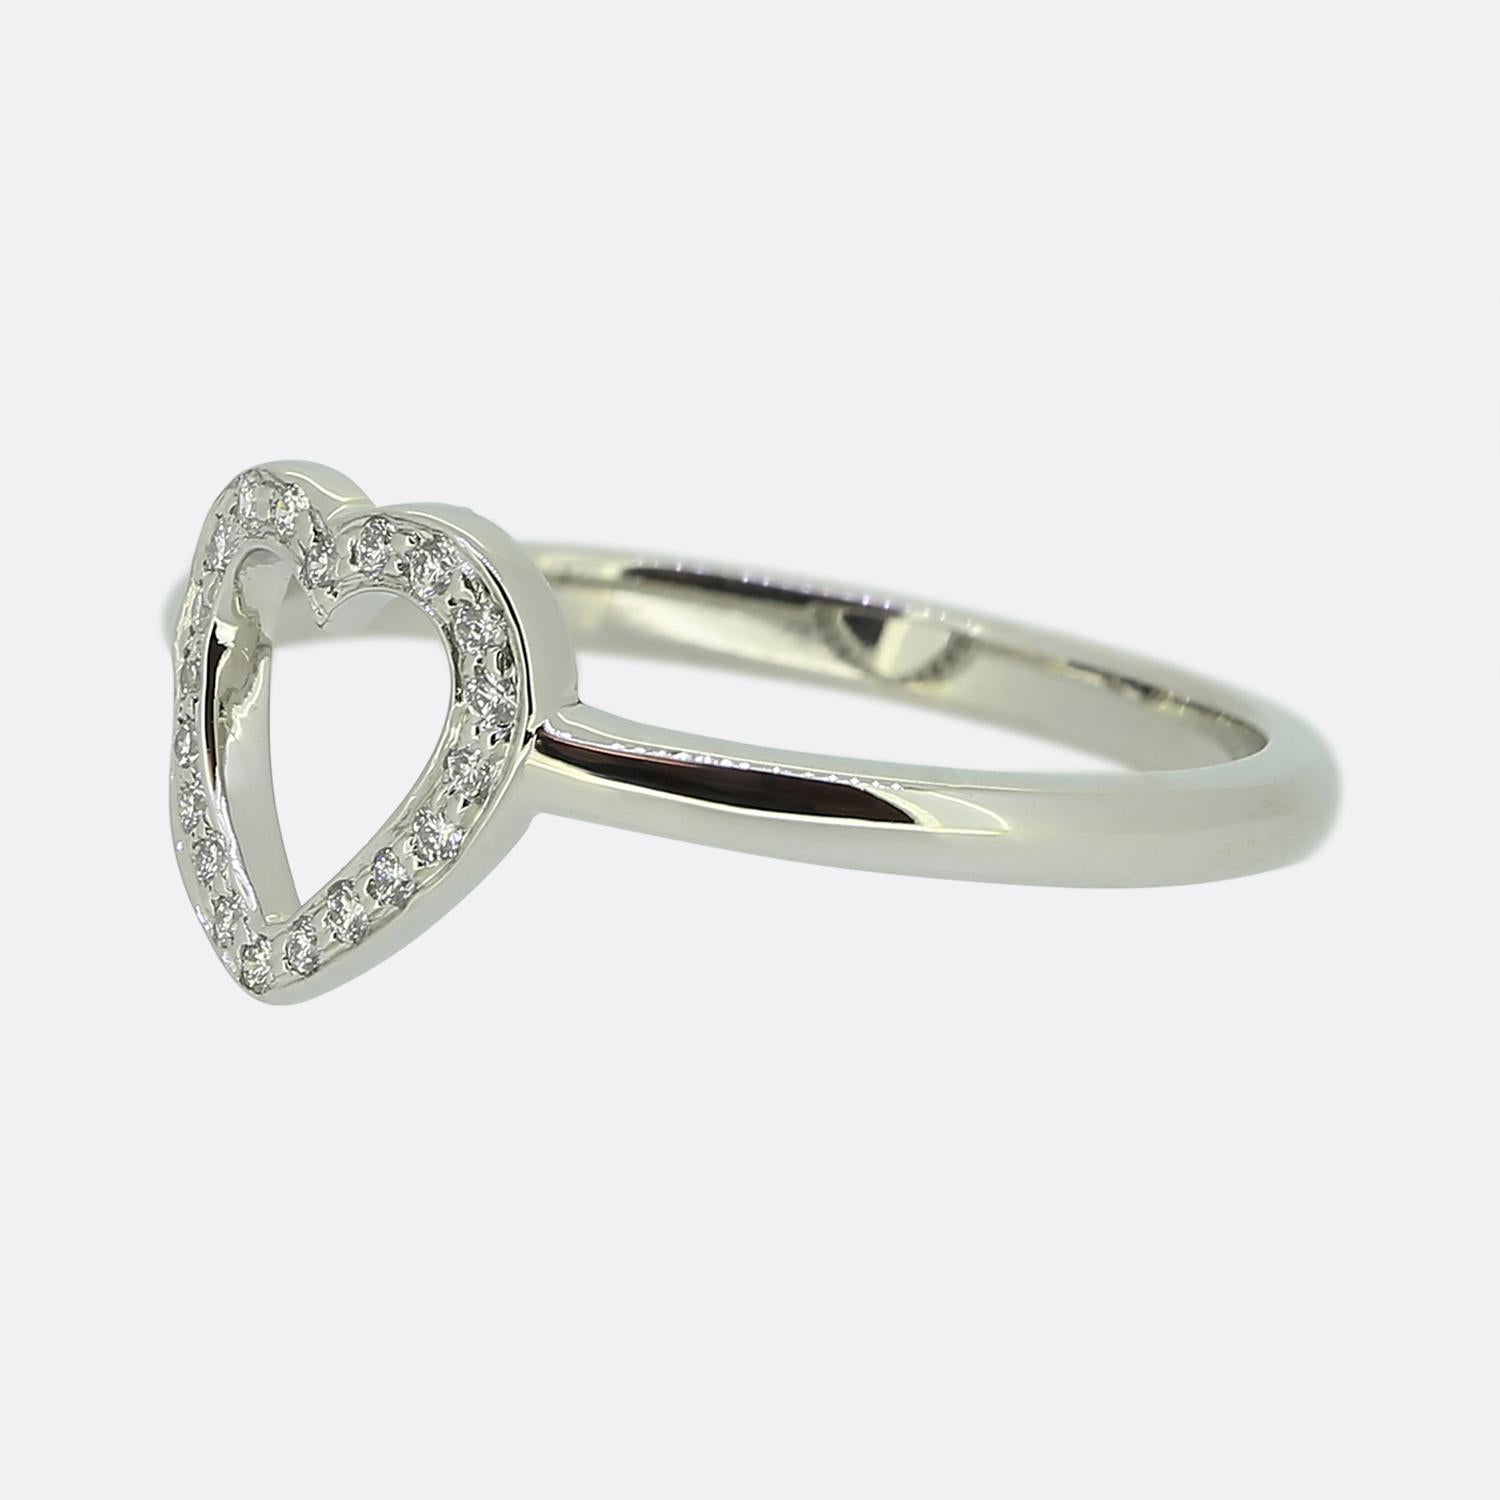 Hier haben wir einen ikonischen Ring des weltbekannten Schmuckdesigners Tiffany & Co. Der Kopf dieses aus Platin gefertigten Schmuckstücks hat die Form eines offenen Liebesherzens, das mit 20 runden Diamanten im Brillantschliff besetzt ist. Ergänzt